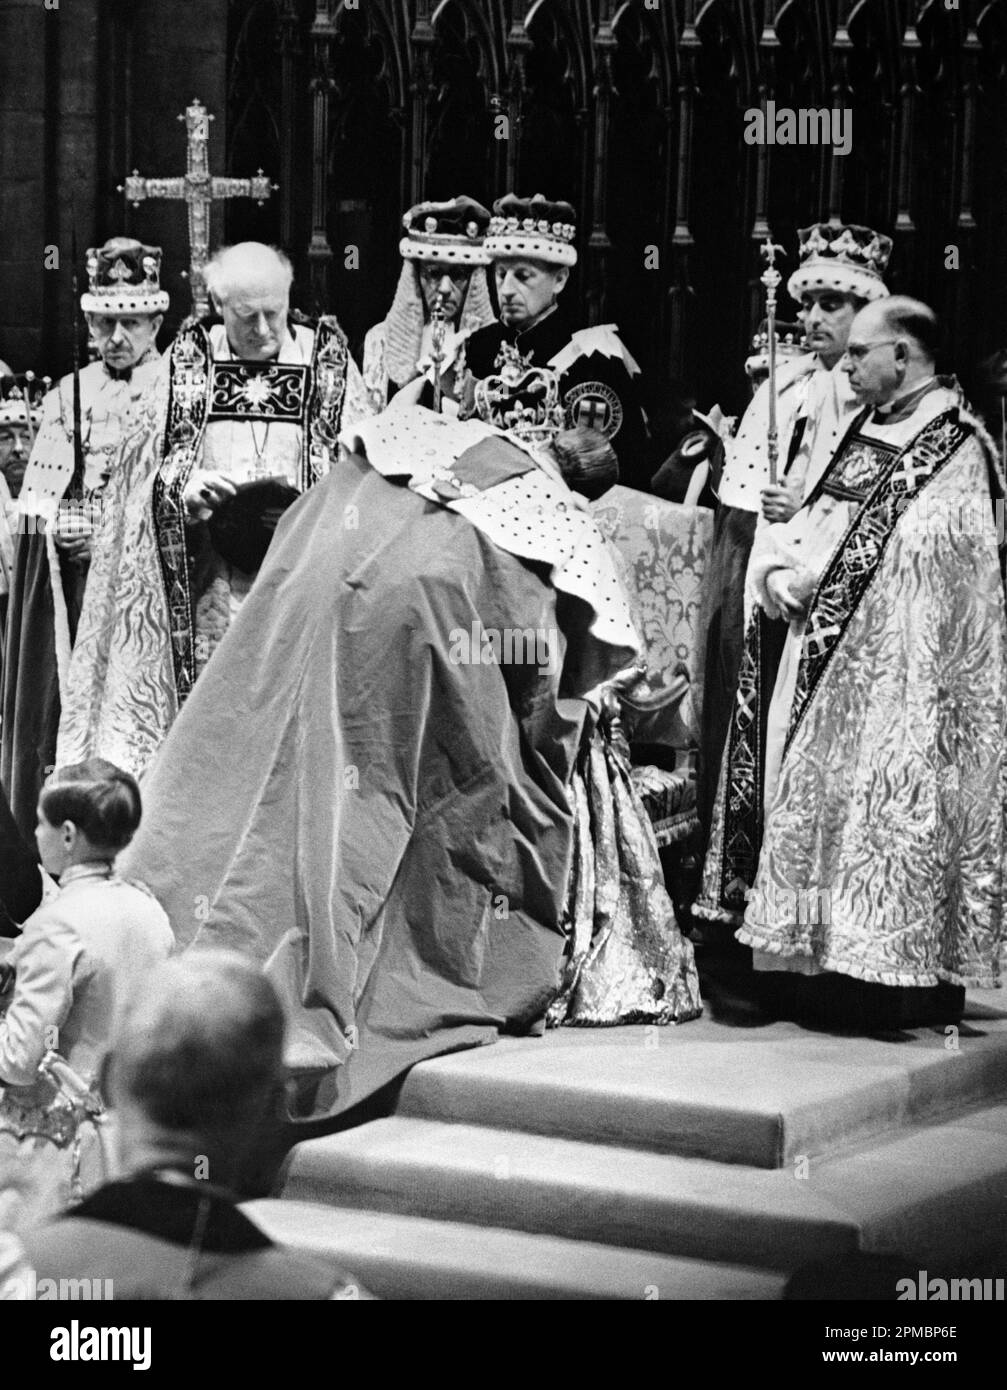 Photo du dossier datée du 02/06/53 le duc d'Édimbourg (alors) rendant hommage à la reine Elizabeth II lors de son couronnement à l'abbaye de Westminster, dans le centre de Londres. Buckingham Palace a annoncé, le duc de Sussex assistera au couronnement du roi Charles III, mais la duchesse de Sussex restera en Californie avec le prince Archie et la princesse Lilibet. Banque D'Images